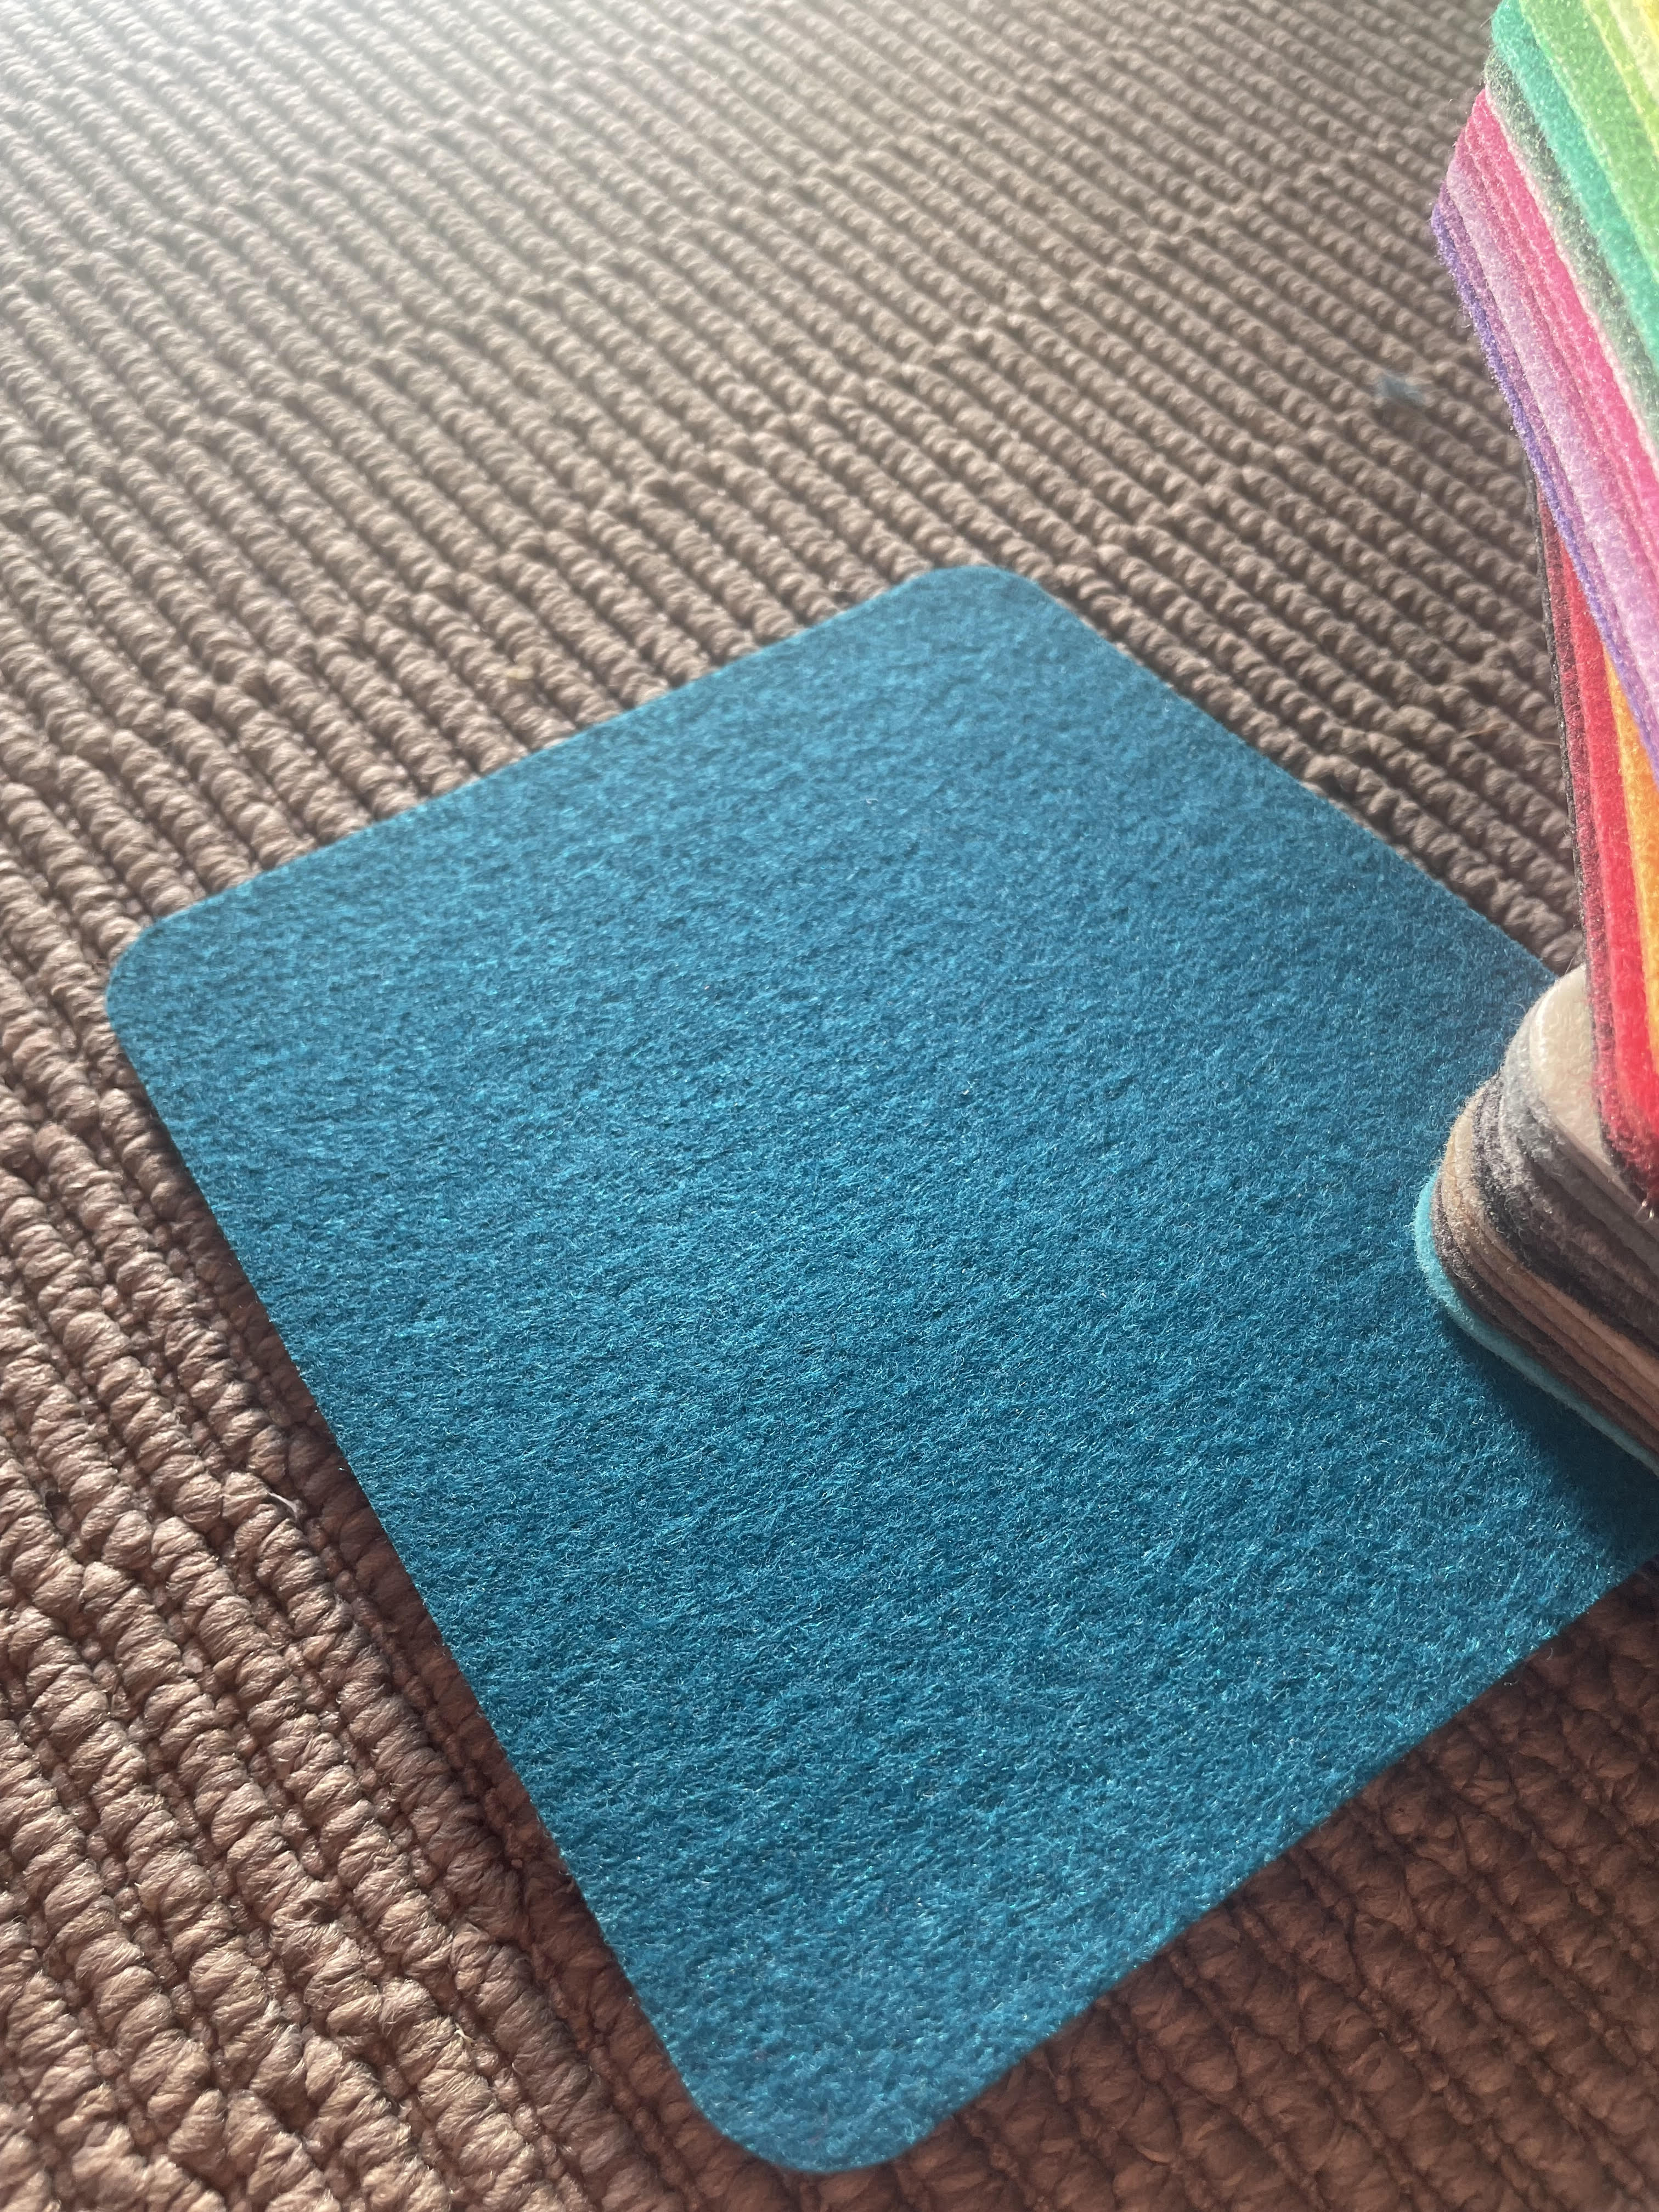 évènementiel tapis moquette bleu atoll bleu meilleur prix qualités pas cher déclassé turquoise